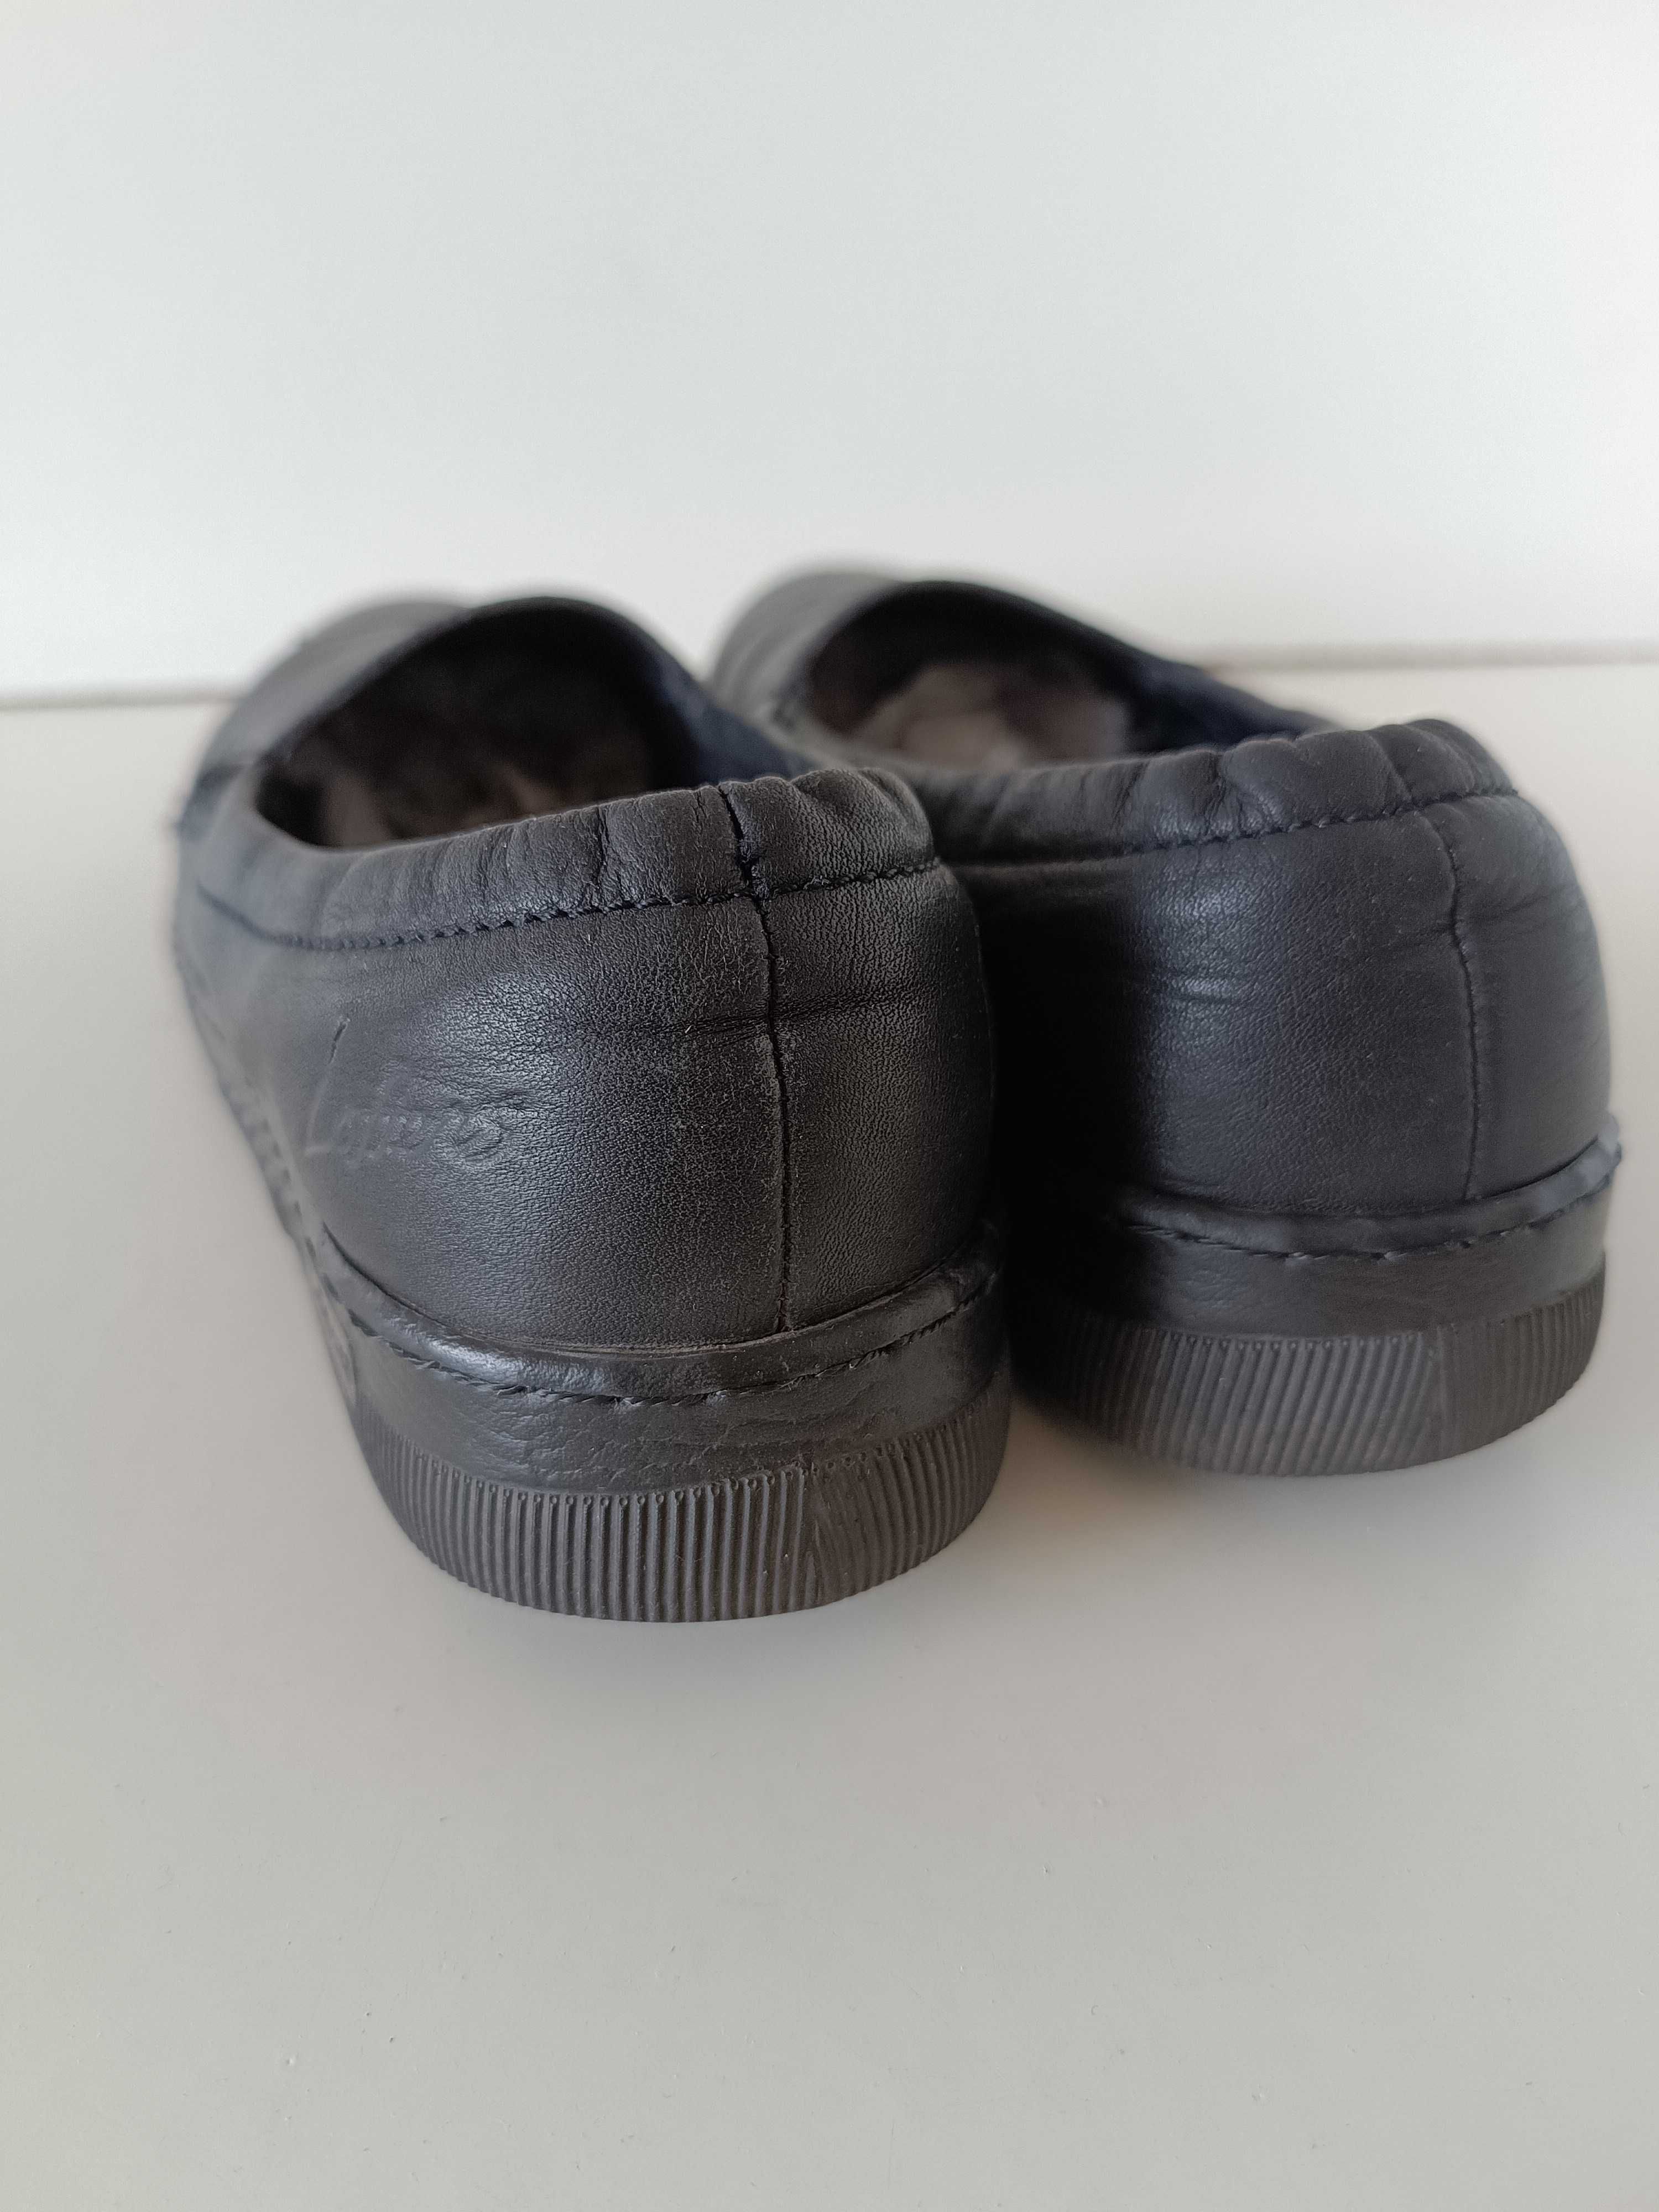 р 36-37 24,5 см кожаные черные туфли мокасины балетки на низкой подошв